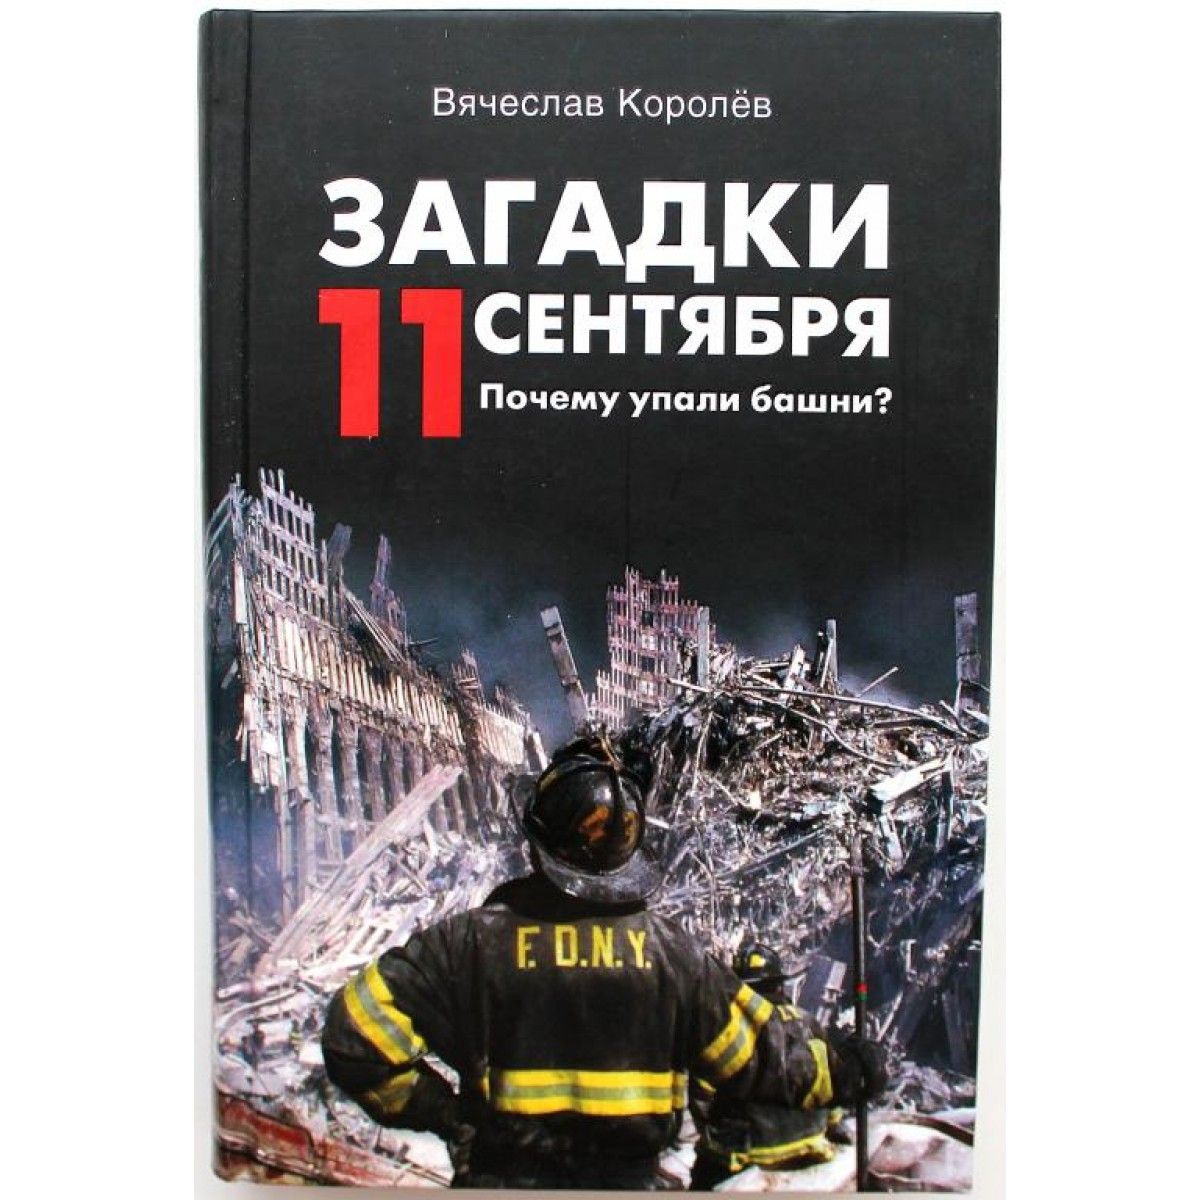 Отчего падает. Загадка 11 сентября. Книга про 11 сентября. Загадка 11 сентября загадки. 11 Сентября почему упали башни.